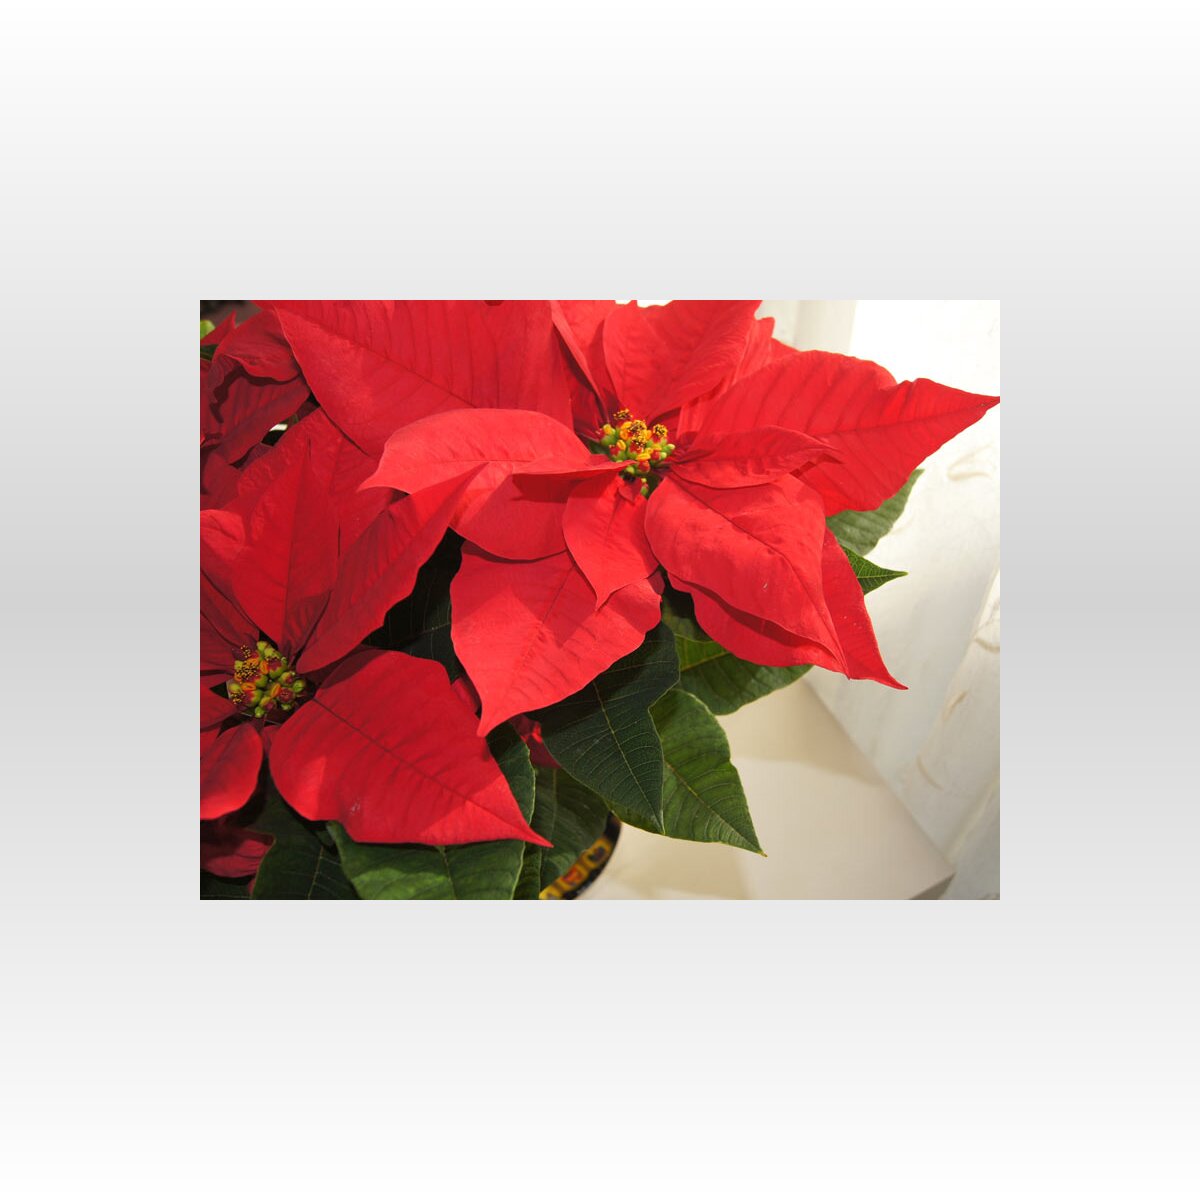 ポインセチアはなぜ クリスマスの花 になったのか 年12月24日 Biglobeニュース